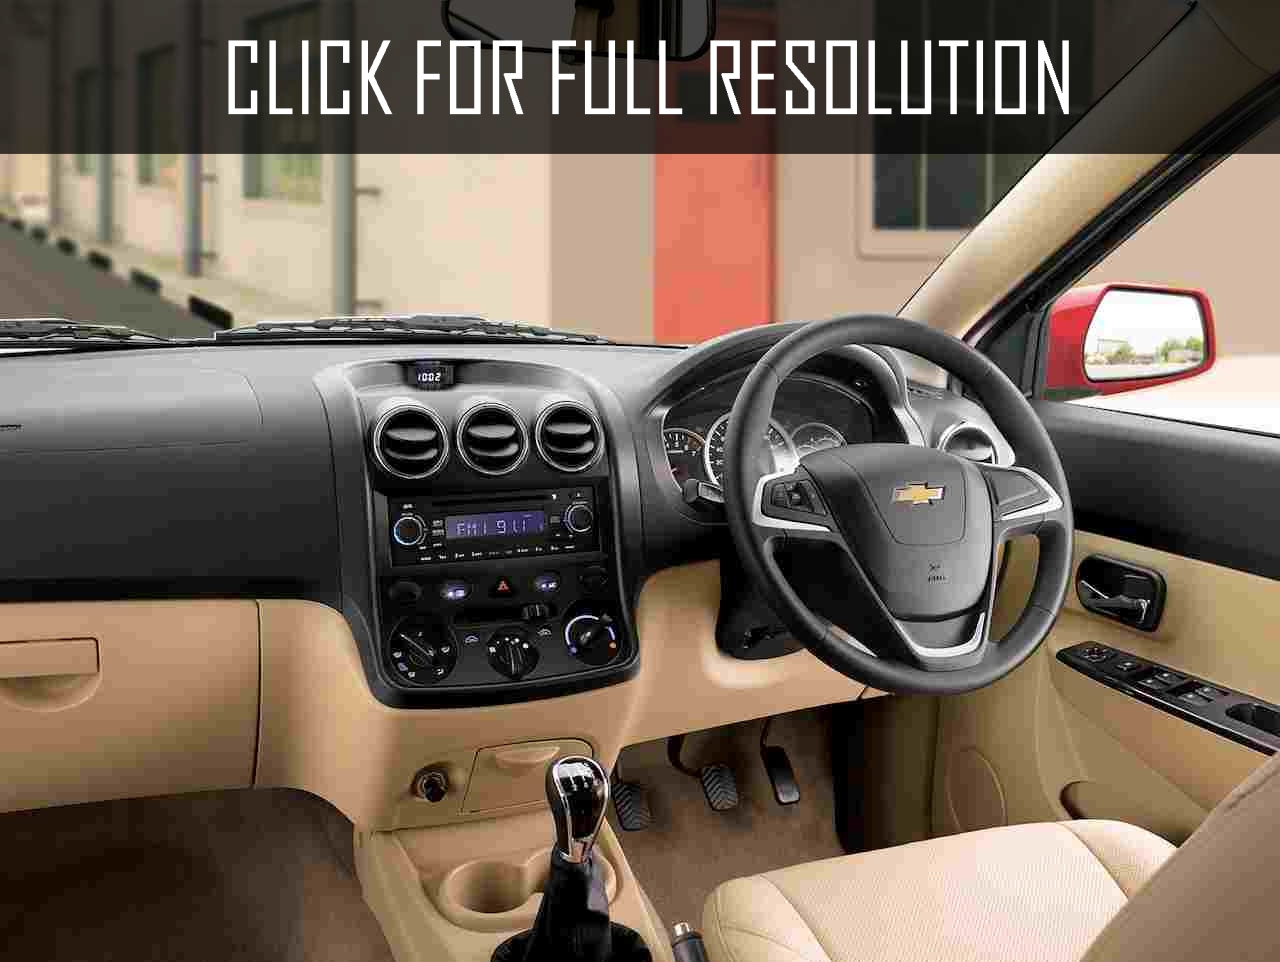 Chevrolet Enjoy 2015